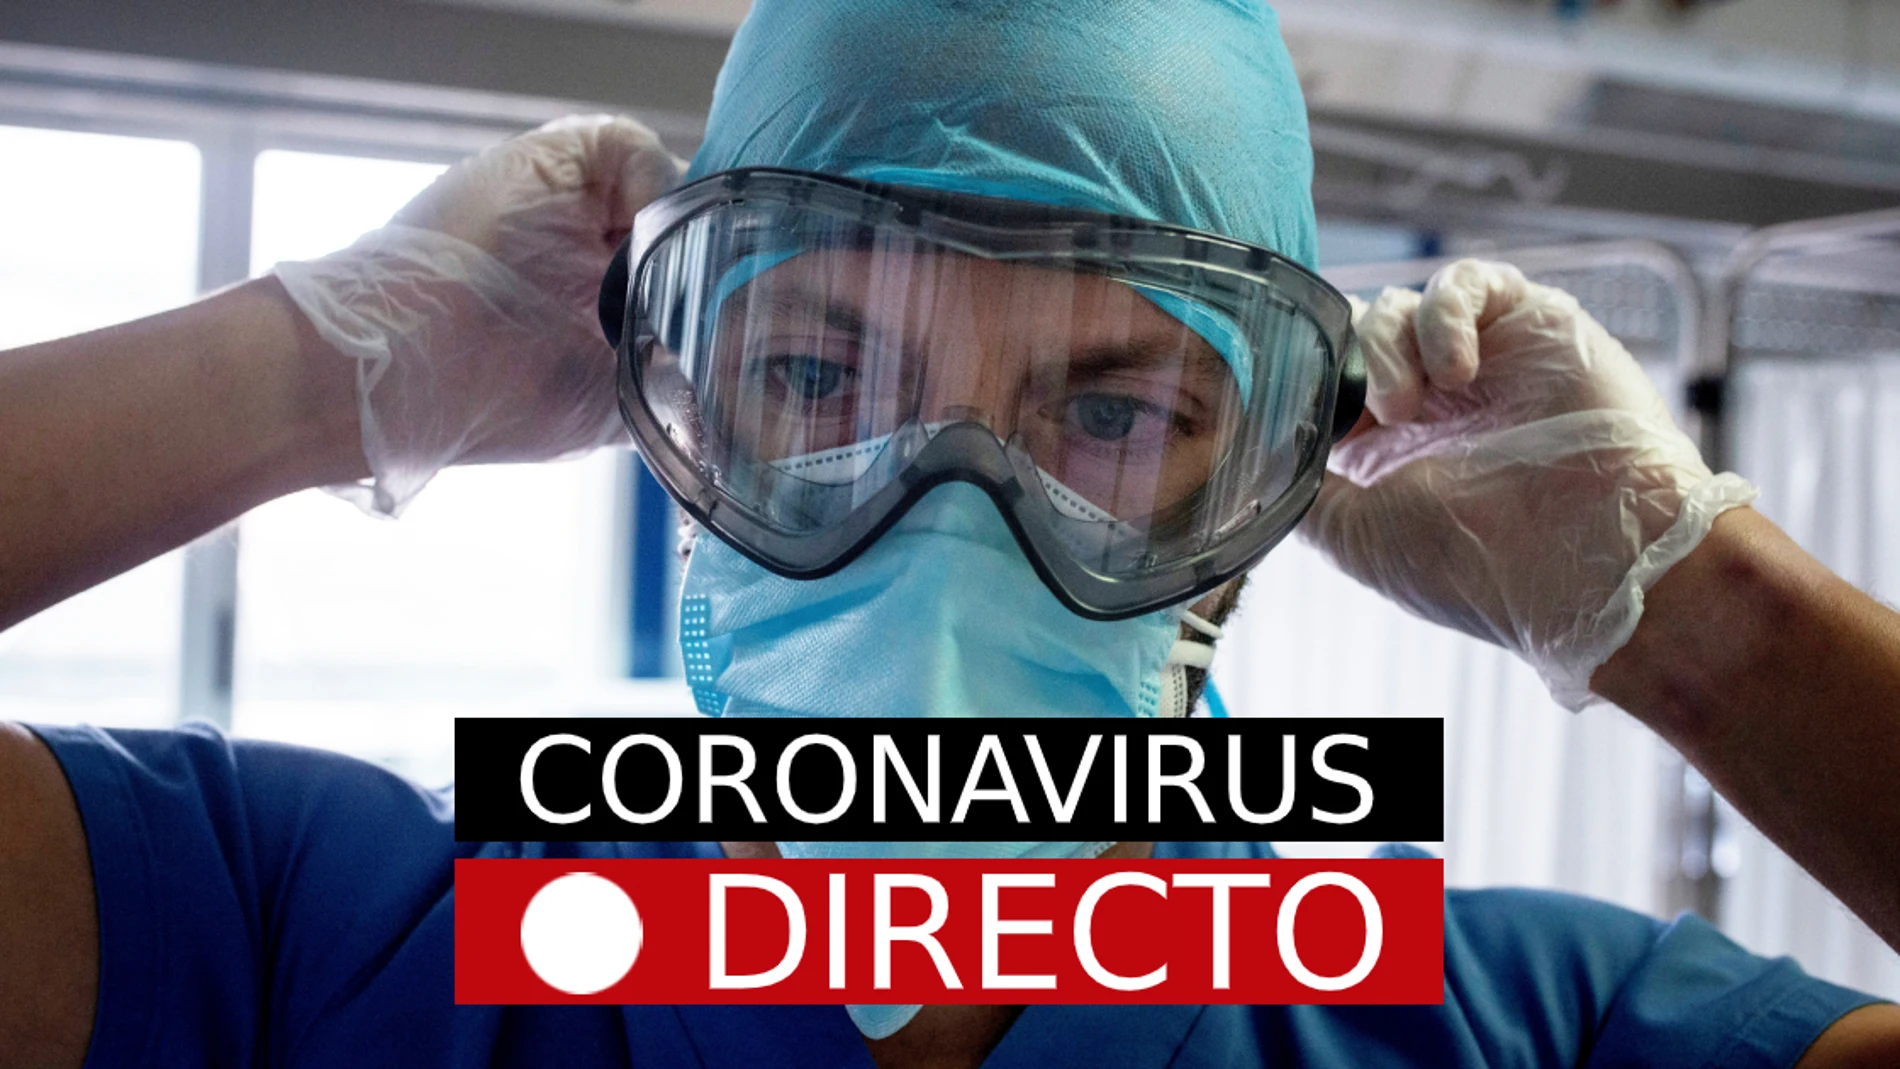 Restricciones por COVID-19, hoy | Nuevas medidas por coronavirus y confinamiento en zonas básicas de salud en Madrid, en directo